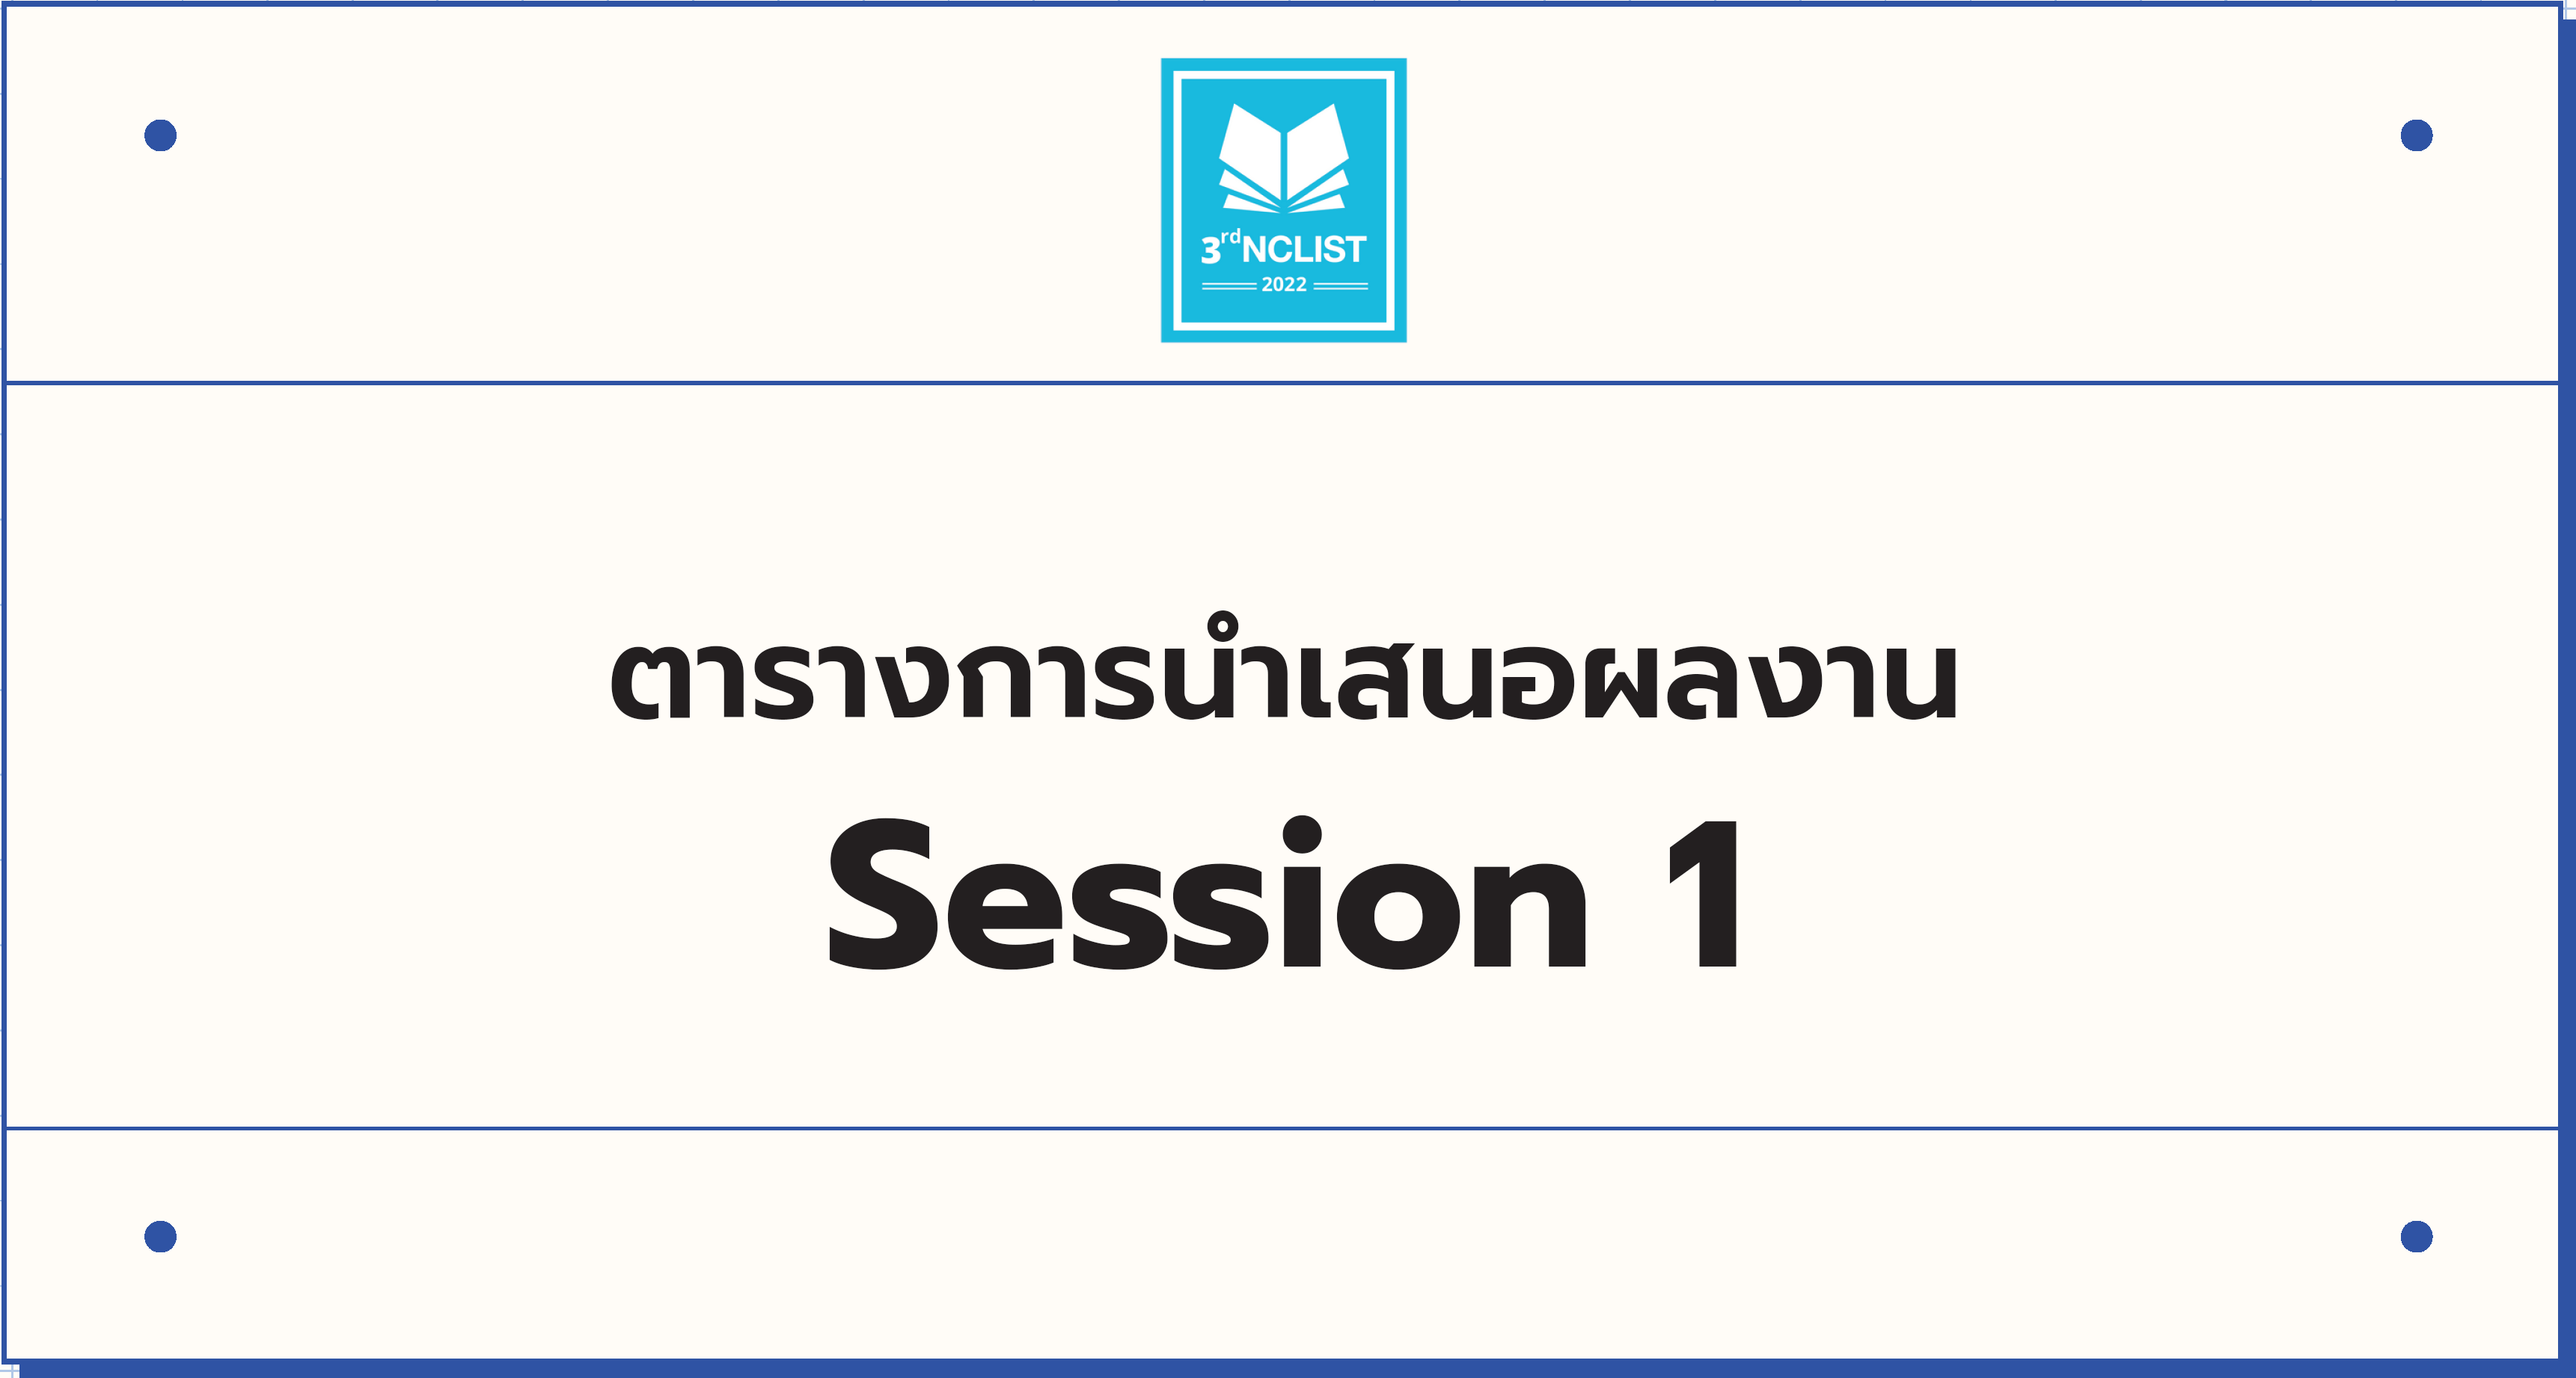 ช่วงบ่าย (Session 1) <br />เวลา 13:00 - 14:45 น.